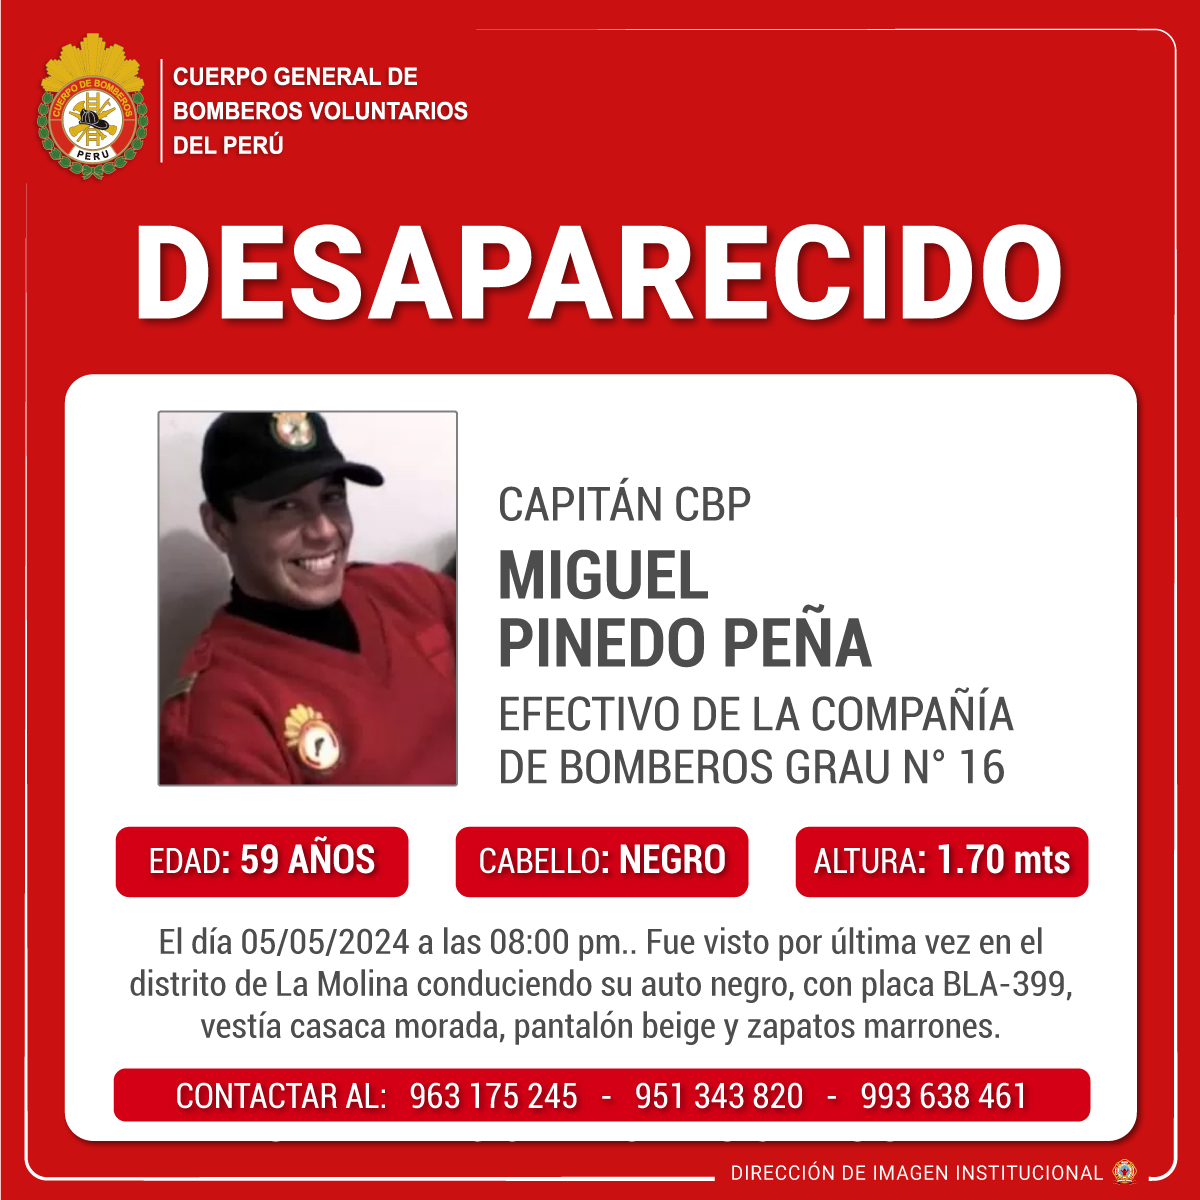 🔎 𝗗𝗘𝗦𝗔𝗣𝗔𝗥𝗘𝗖𝗜𝗗𝗢 🔍 Capitán CBP Miguel Pinedo Peña, de 59 años, bombero voluntario en la Compañía de Bomberos Grau N° 16. El día 05/05/2024 a las 08:00 pm.. Fue visto por última vez en el distrito de La Molina Información adicional: shorturl.at/ABRY5